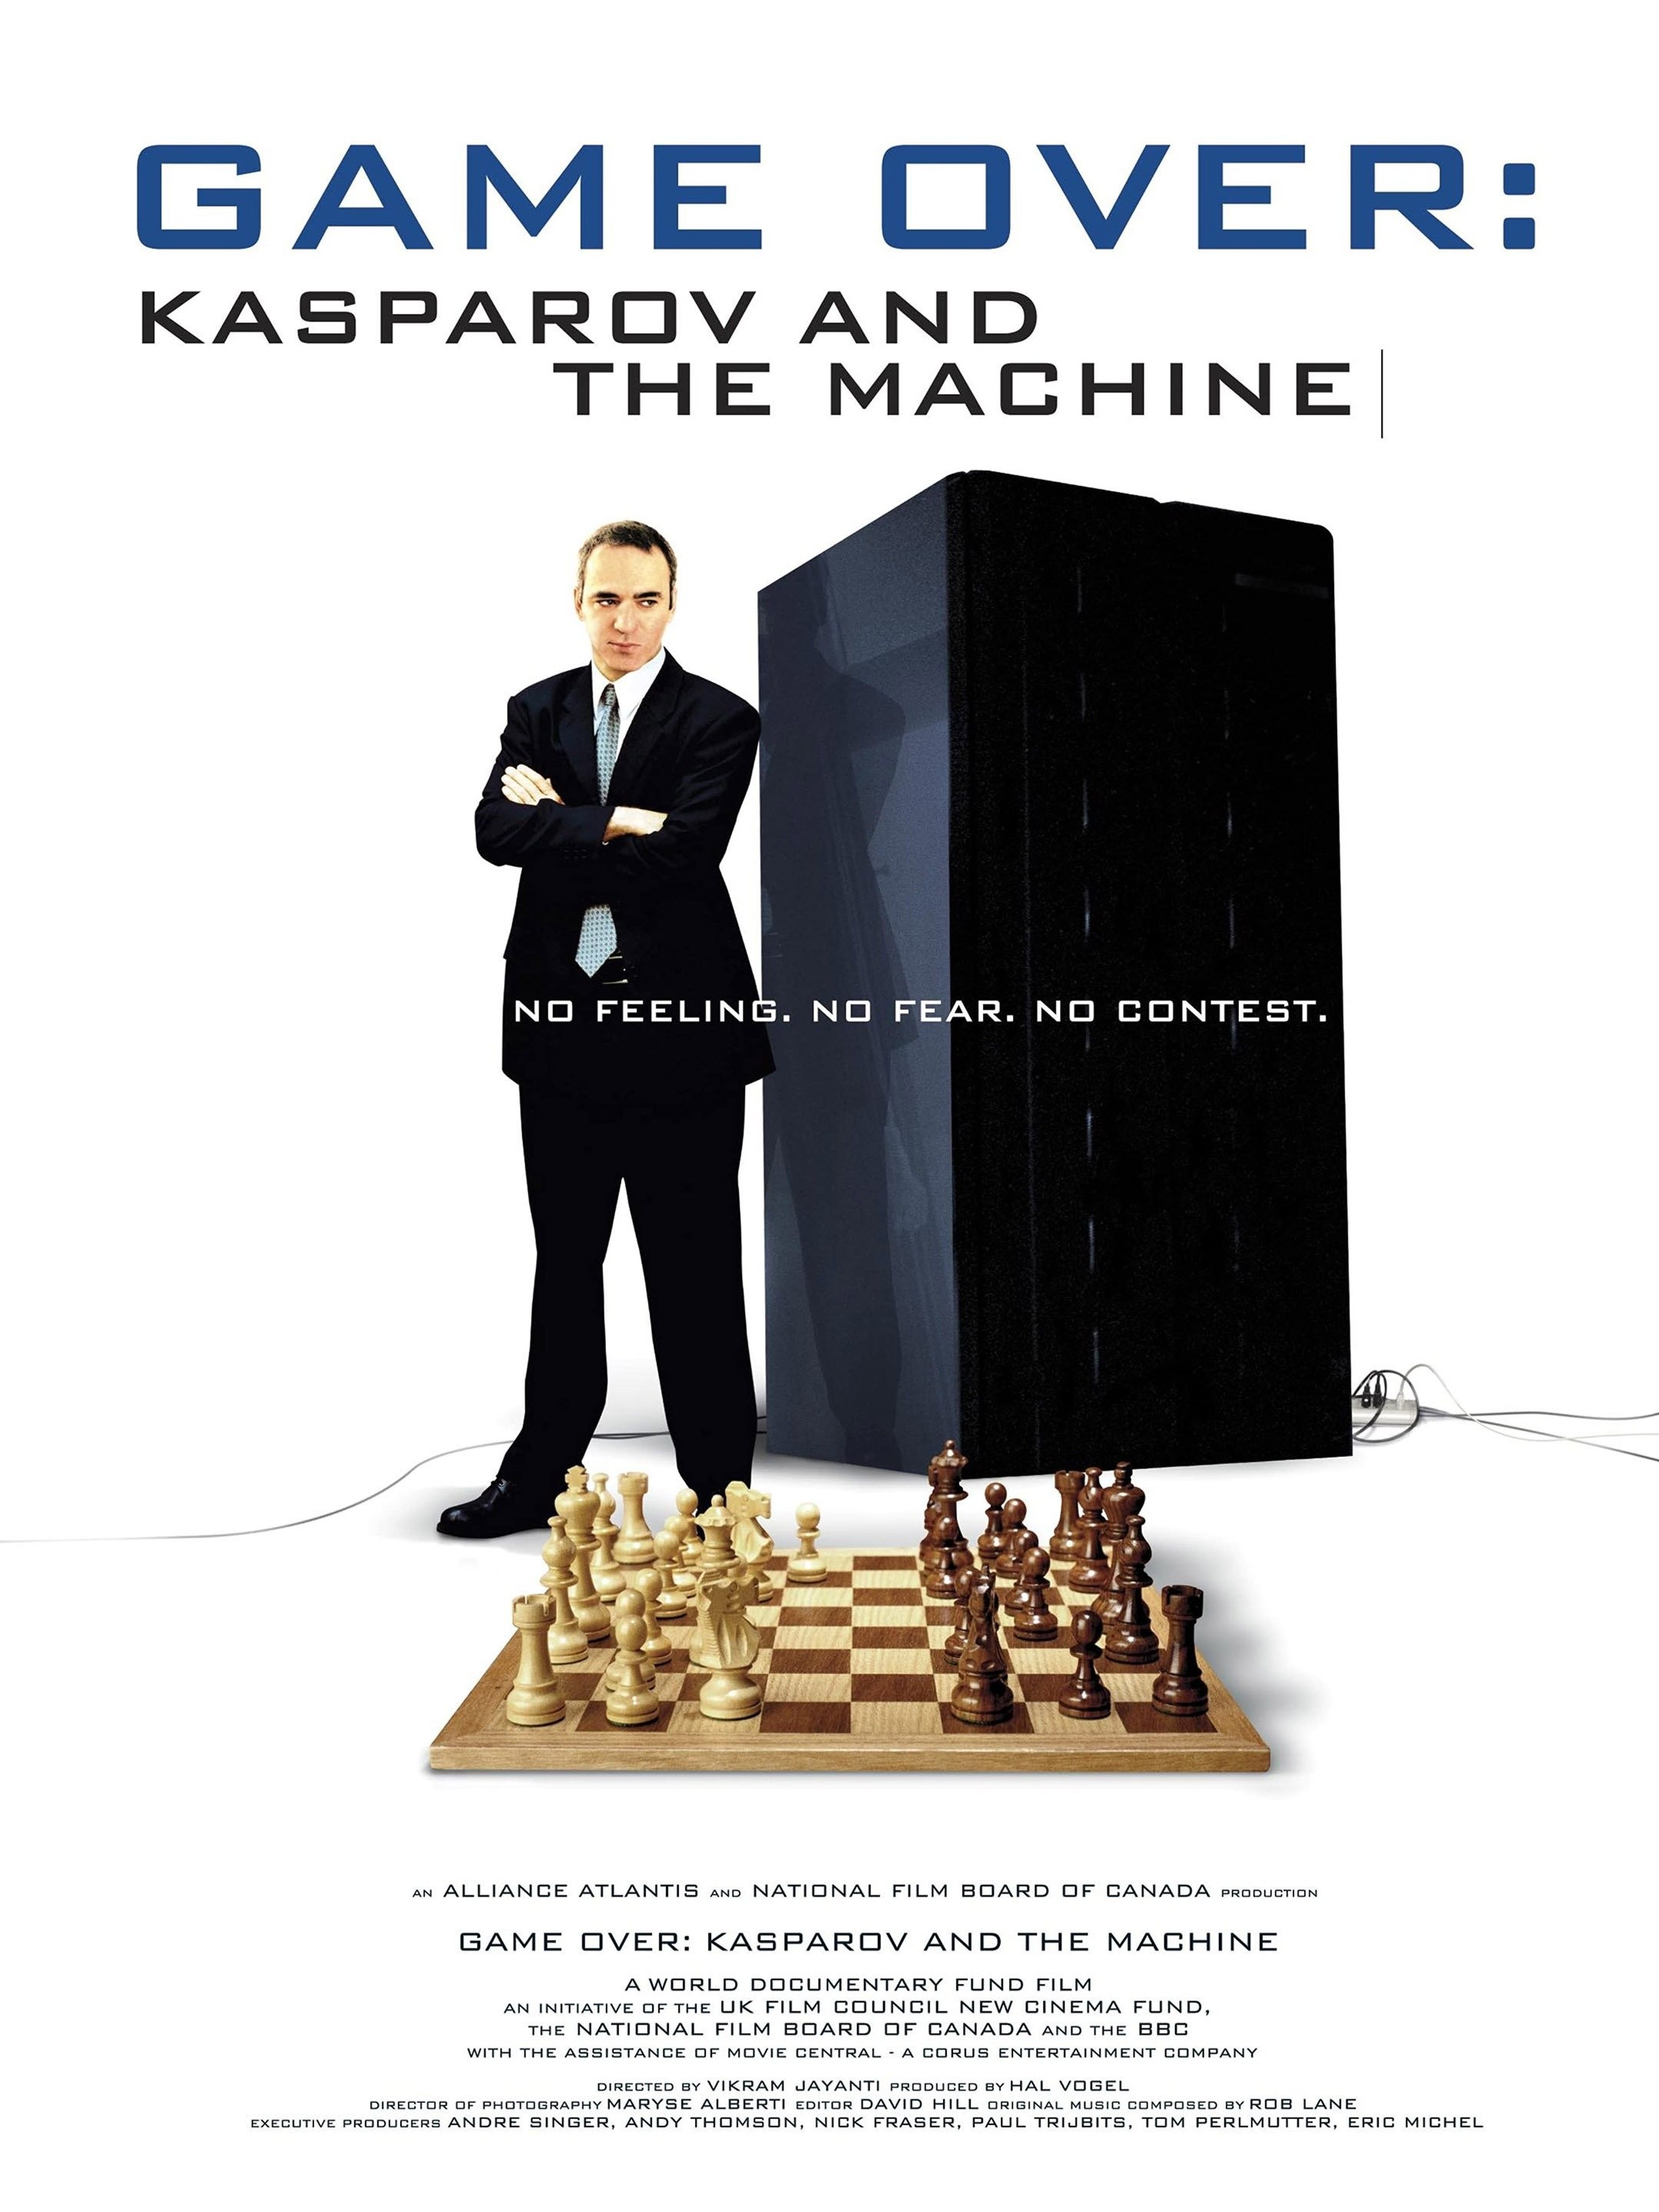 Deep Blue vs Garry Kasparov, 25 Years On